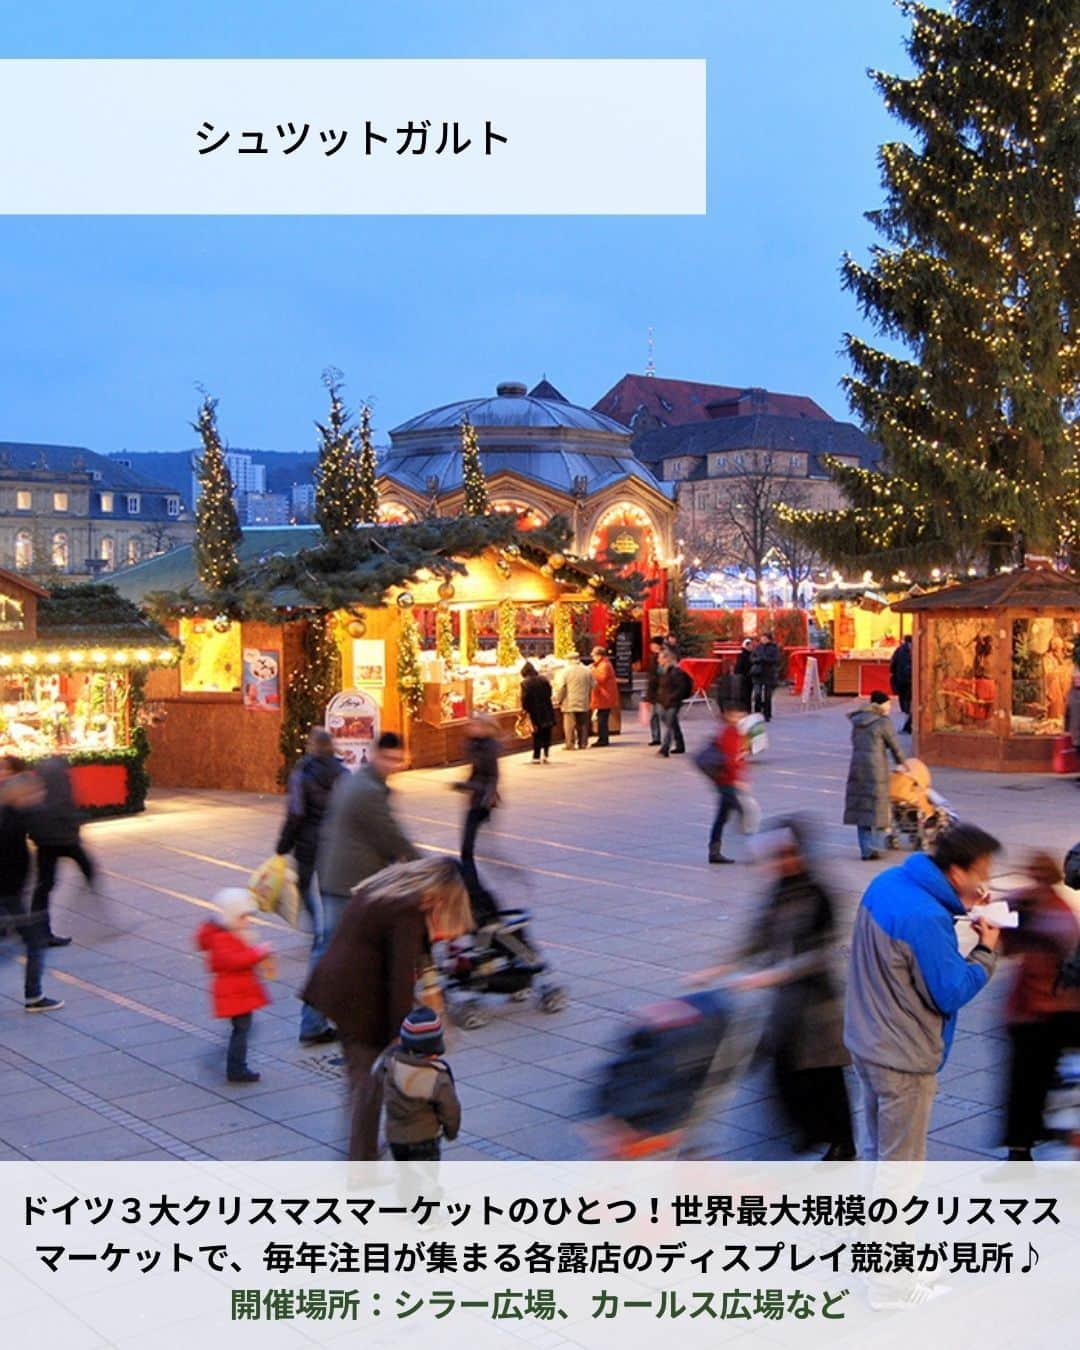 旅工房公式さんのインスタグラム写真 - (旅工房公式Instagram)「＼これからの季節にぴったり✨✨／ #ドイツ #クリスマスマーケット  こんにちは！☺ 今回は12月に入りもうすぐクリスマス🎄ということで、クリスマスマーケットの本場ドイツのクリスマスマーケットを特集しました！  まだ今年の12月出発のドイツツアーも販売中✨ 今年のクリスマスをドイツで過ごすのはいかがでしょう？  次の海外旅行の参考になりますように＼(^o^)／ 💚  ━━━━━━━━━━━━━━━  📍シュツットガルト ドイツ３大クリスマスマーケットのひとつ！世界最大規模のクリスマスマーケットで、毎年注目が集まる各露店のディスプレイ競演が見所♪ 開催場所：シラー広場、カールス広場など  📍ニュルンベルク 城壁に囲まれた旧市街がクリスマス一色に包まれるます♪ 中世の面影を感じさせるノスタルジックな雰囲気がロマンティック！ 開催場所：ハウプトマルクト広場、ハンス・ザックス広場など  📍ドレスデン 世界最古のクリスマスマーケットとして有名なスポット！ 様々な歴史的建造物が美しく厳かな雰囲気をより一層引き立てます。 開催場所：アルトマルクト広場、ノイマルクト広場など  📍ミュンヘン 人気の観光スポットである市庁舎の仕掛け時計がクリスマスツリーの灯りに照らされます♪ ファンタジーな雰囲気を思いっきり楽しんで◎ 開催場所：マリエン広場など  📍ベルリン 世界で一番マーケットの種類が多いことで有名！ ベルリンらしさ溢れるユニークなマーケットが市内の至る所に出現します。 開催場所：ジャンダルメンマルクトなど  📍ケルン この季節だけ出現するクリスマスツリーと、それを見守るかのようにそびえ立つ大聖堂のコントラストは圧巻！ 開催場所：ケルン大聖堂前、ノイマルクトなど  この記事を読んで、ぜひ参考にしてみて下さい＼(^o^)／💛  ━━━━━━━━━━━━━━━  �  #旅工房 #ドイツクリスマスマーケット #ドイツグルメ #ドイツ旅行 #ドイツ女子旅 #クリスマス市 #シュッツガルド #ドイツスイーツ #ニュルンベルク #ドレスデン #ミュンヘン #ベルリン #ホットワイン #ケルン #ケルン大聖堂 #ボケリア市場 #マリエン広場 #クリスマス #クリスマス旅行 #ヨーロッパ旅行 #旅行好きな人と繋がりたい #海外旅行準備 #旅好き女子 #妄想旅行 #海外旅行行きたい #海外旅行計画 #旅スタグラム #海外一人旅」11月14日 18時30分 - tabikobo